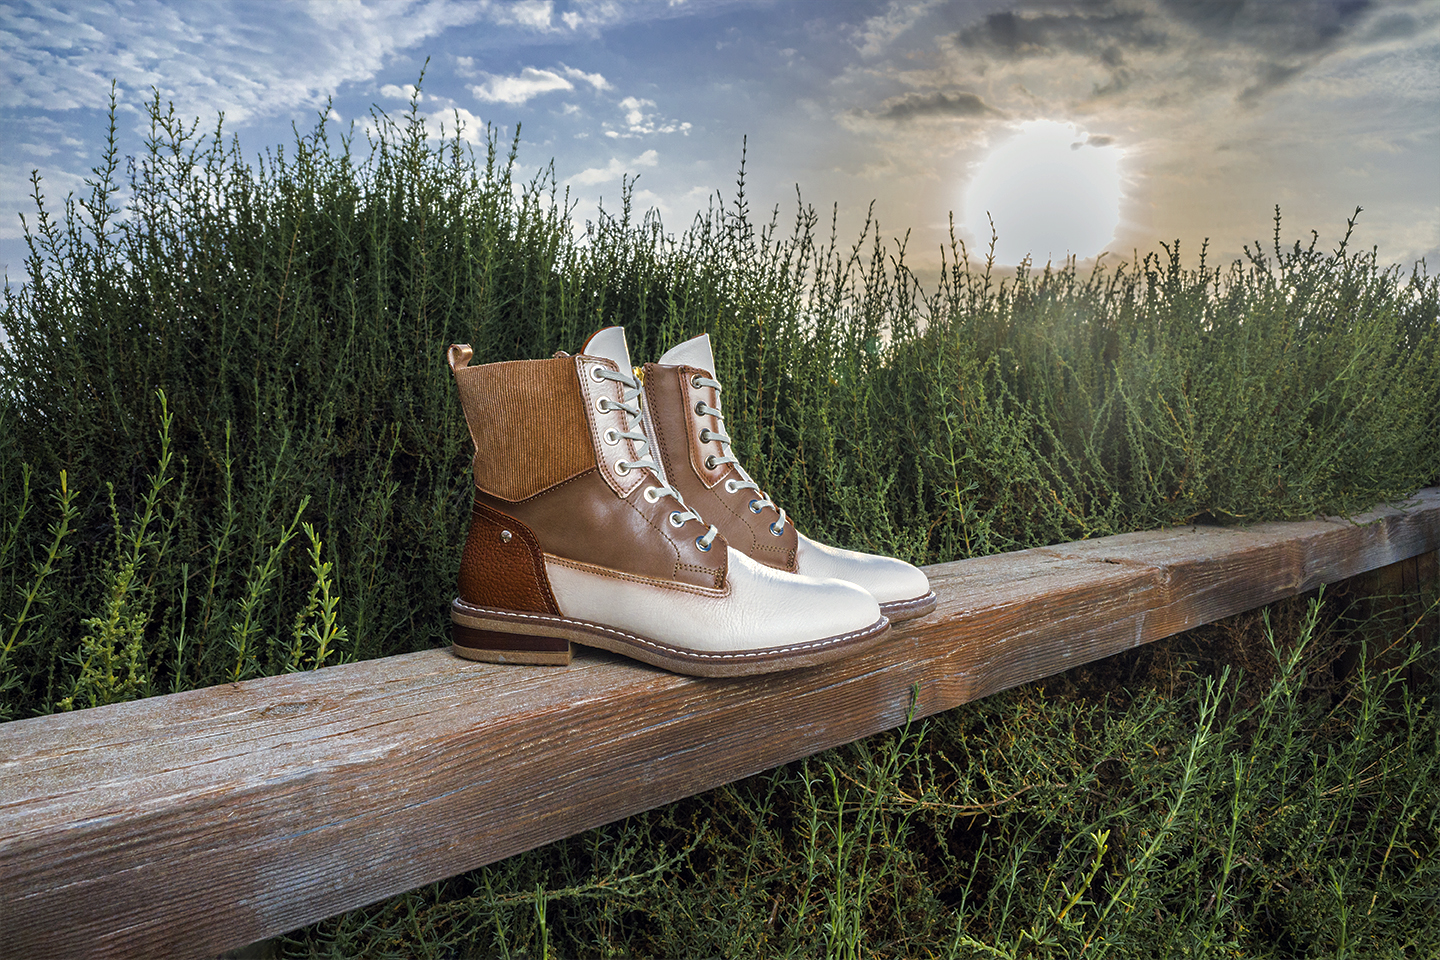 Imagen de unas botas Pikolinos en colores marfil y brandy en un entorno natural.